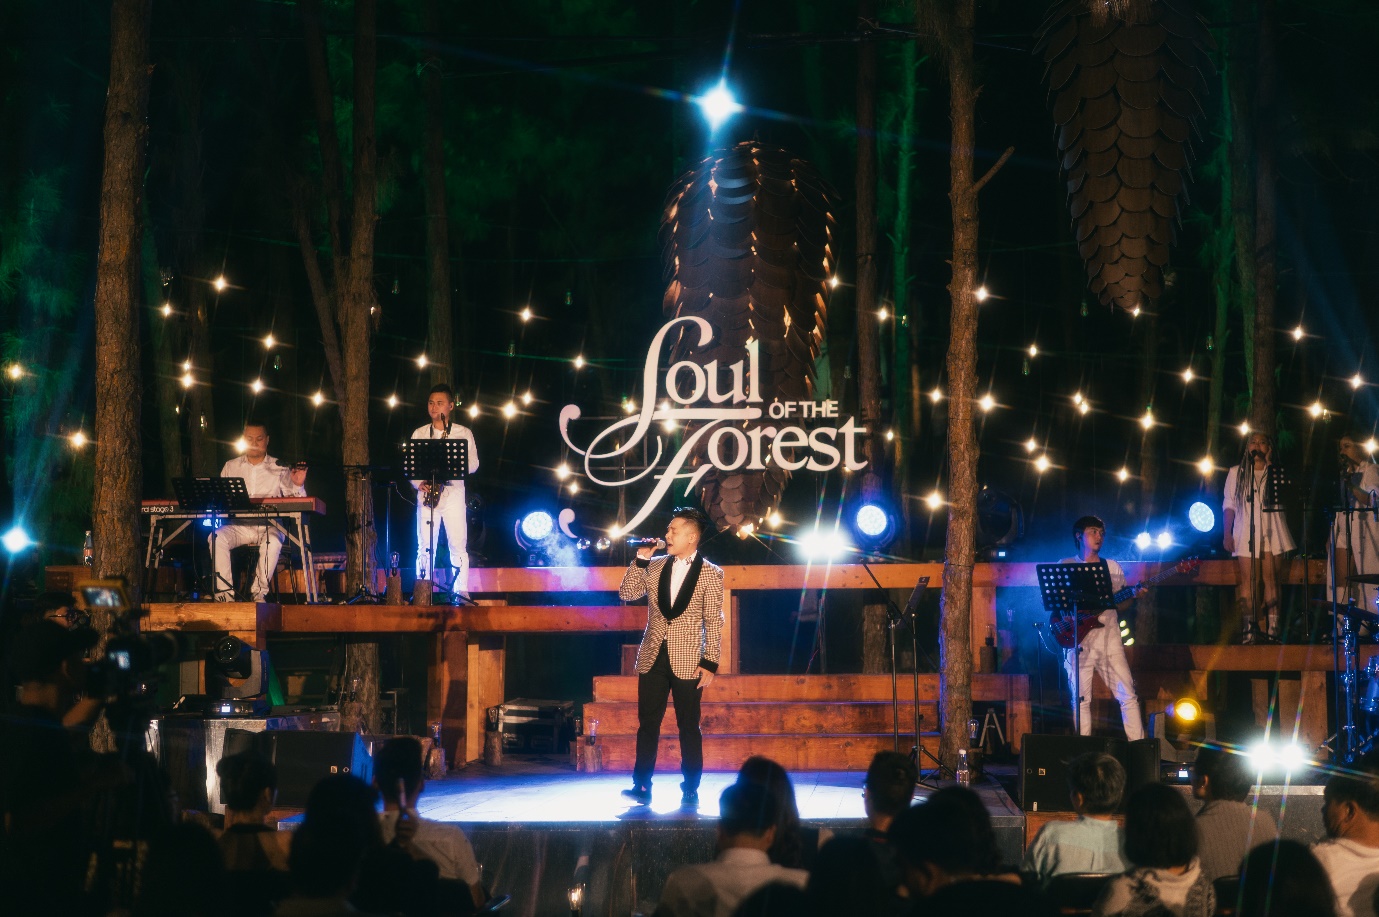 Bằng Kiều trở lại ấn tượng với đêm nhạc Soul of the Forest “Cơn mơ băng giá” - Ảnh 4.